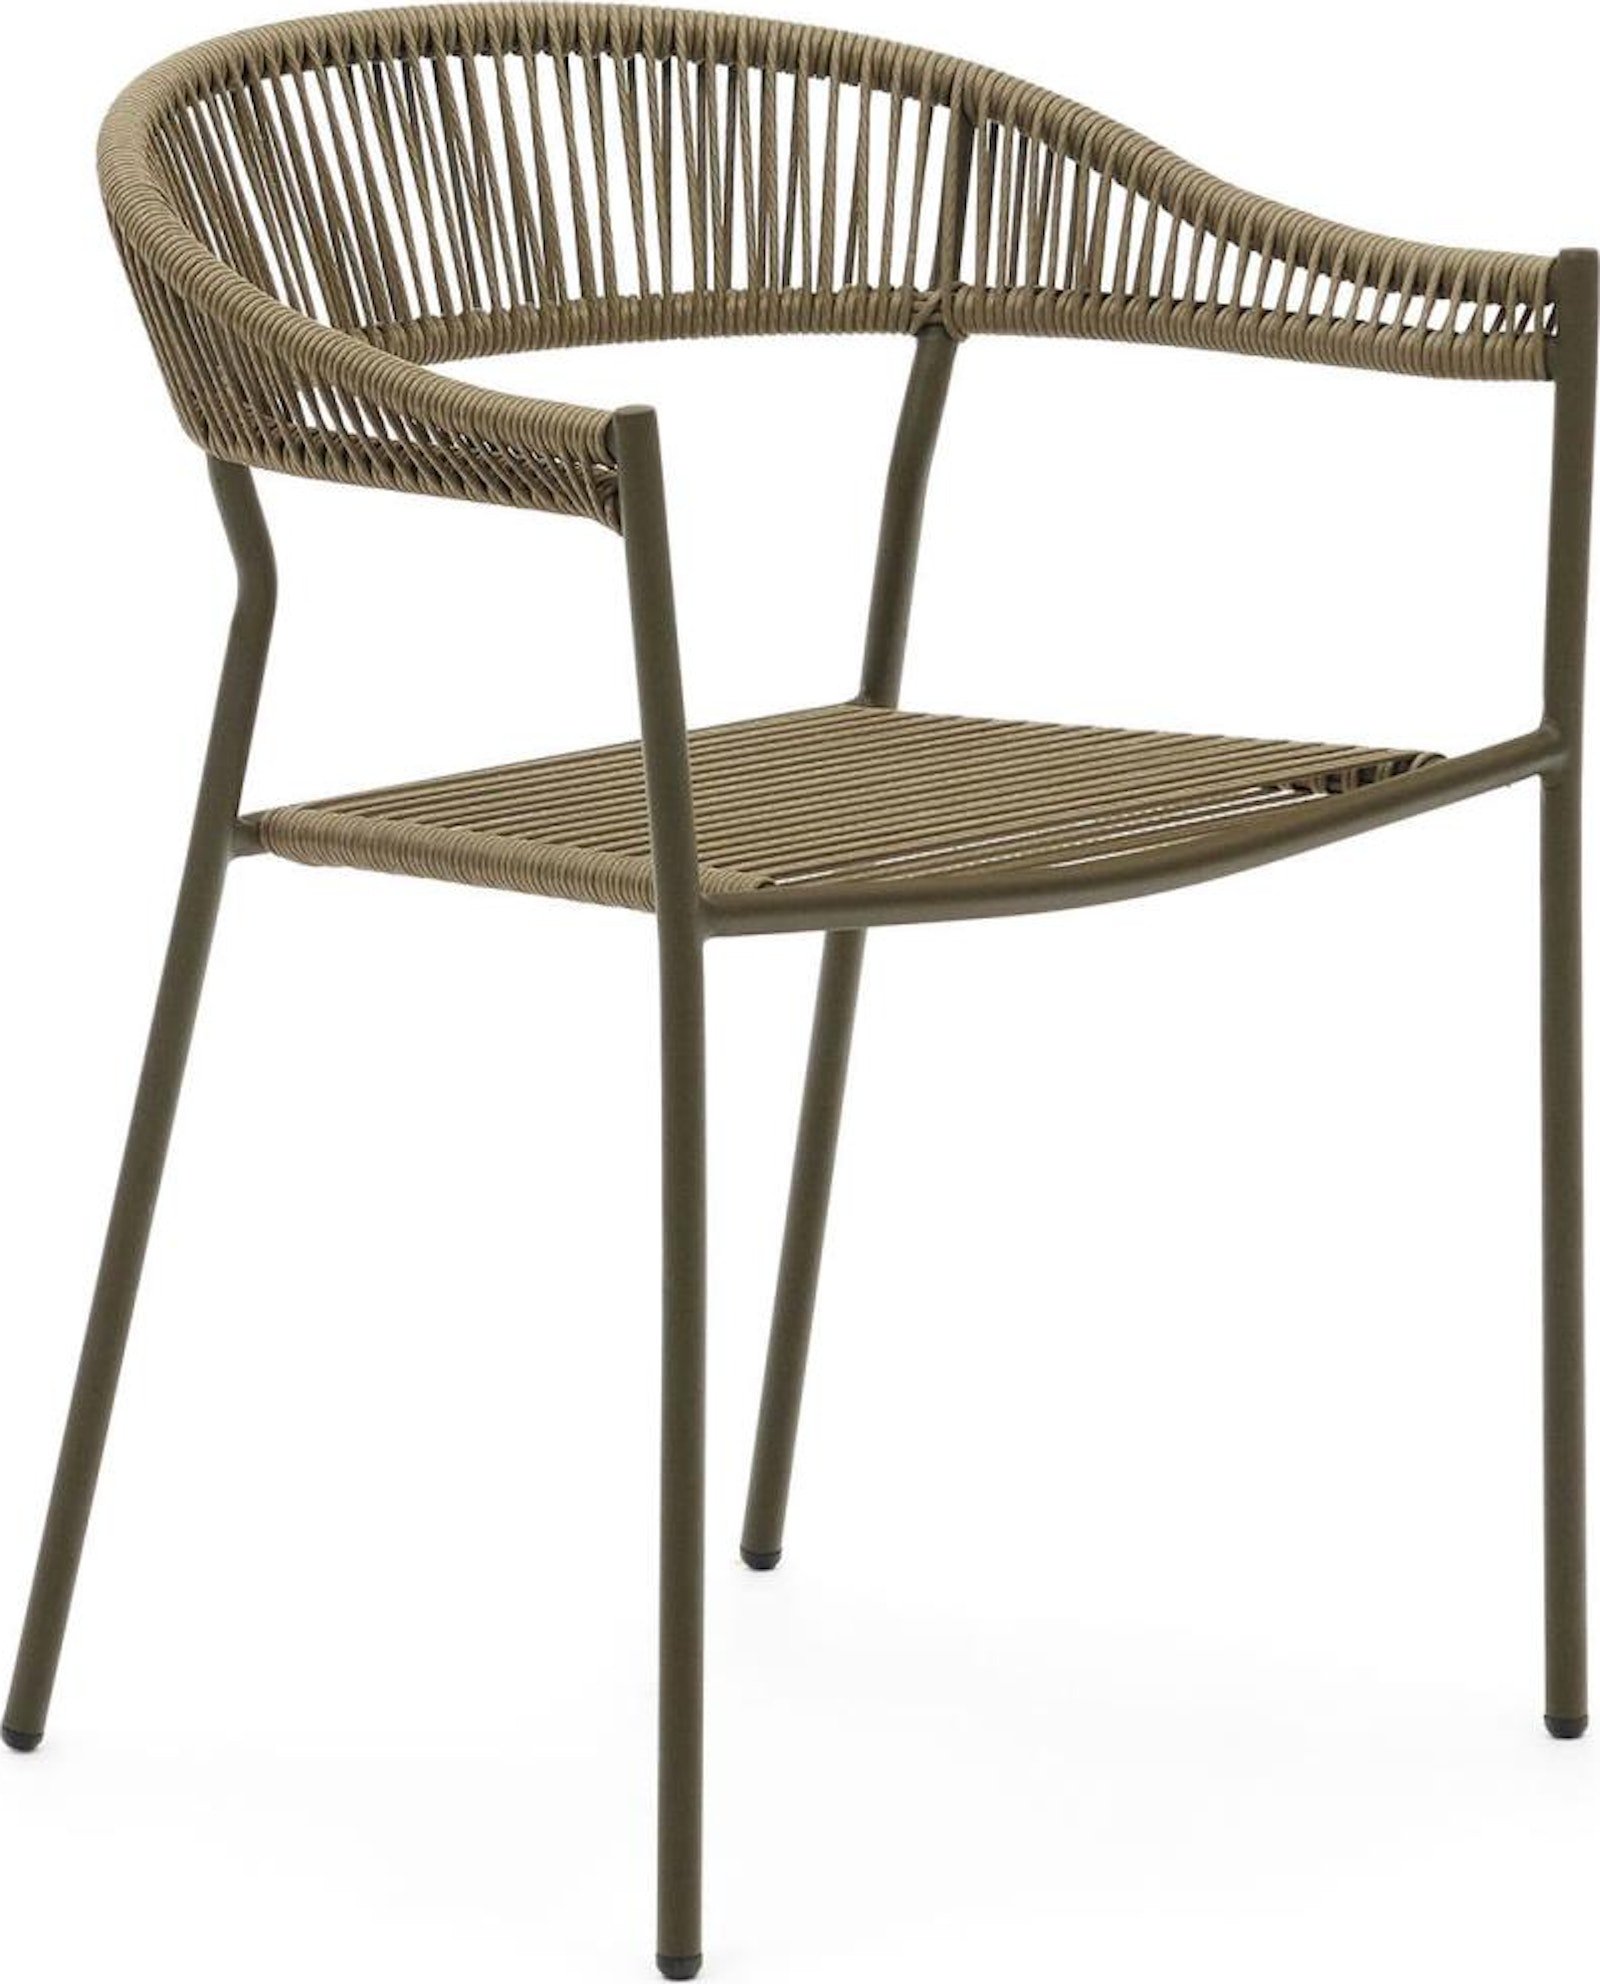 Billede af Futadera, Udendørs stol, moderne, nordisk by Laforma (H: 76 cm. x B: 57 cm. x L: 54 cm., Grøn)